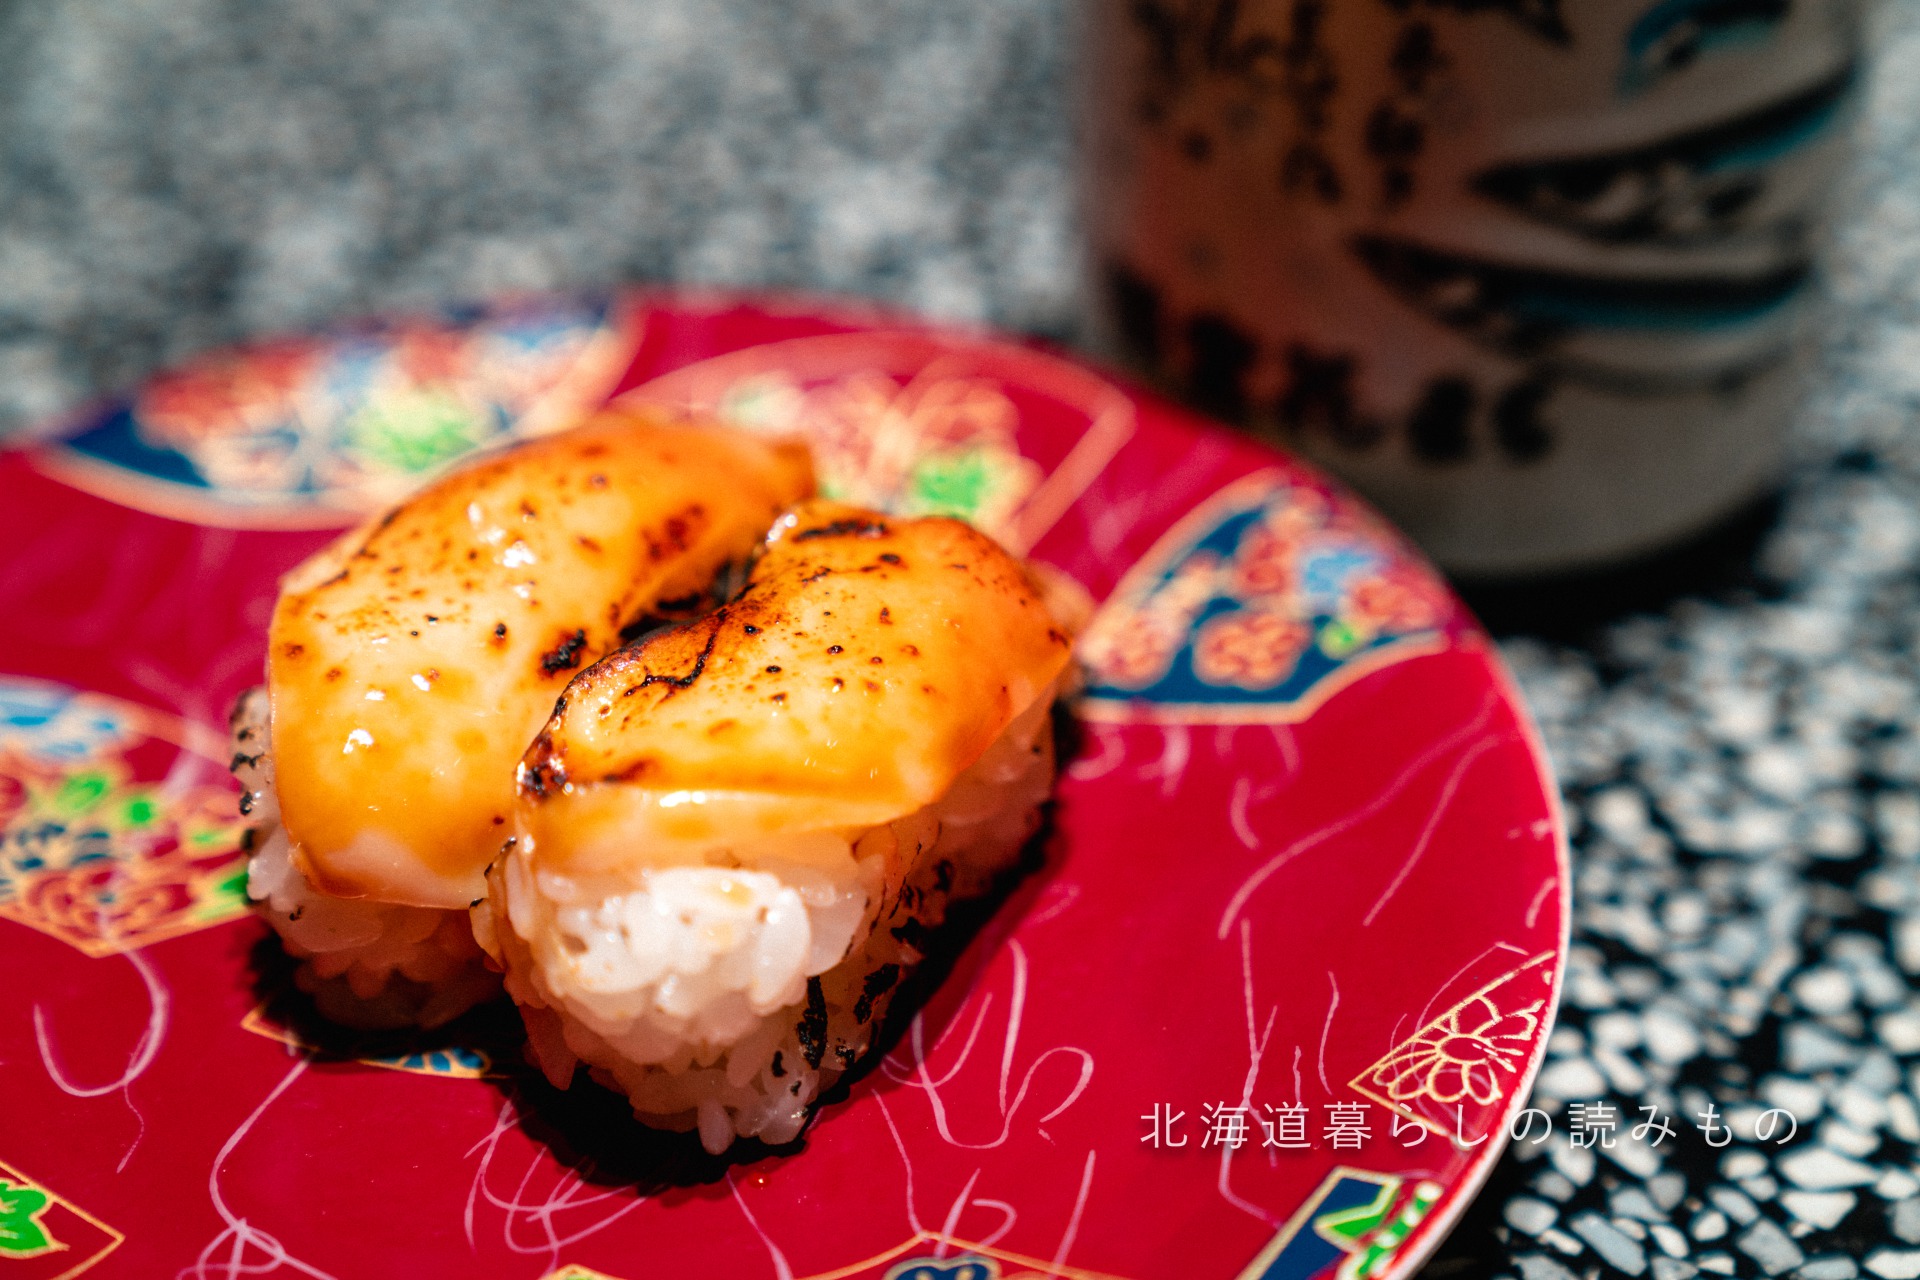 迴轉壽司根室花丸的菜單上的「烤北寄貝燒焦的醬油」